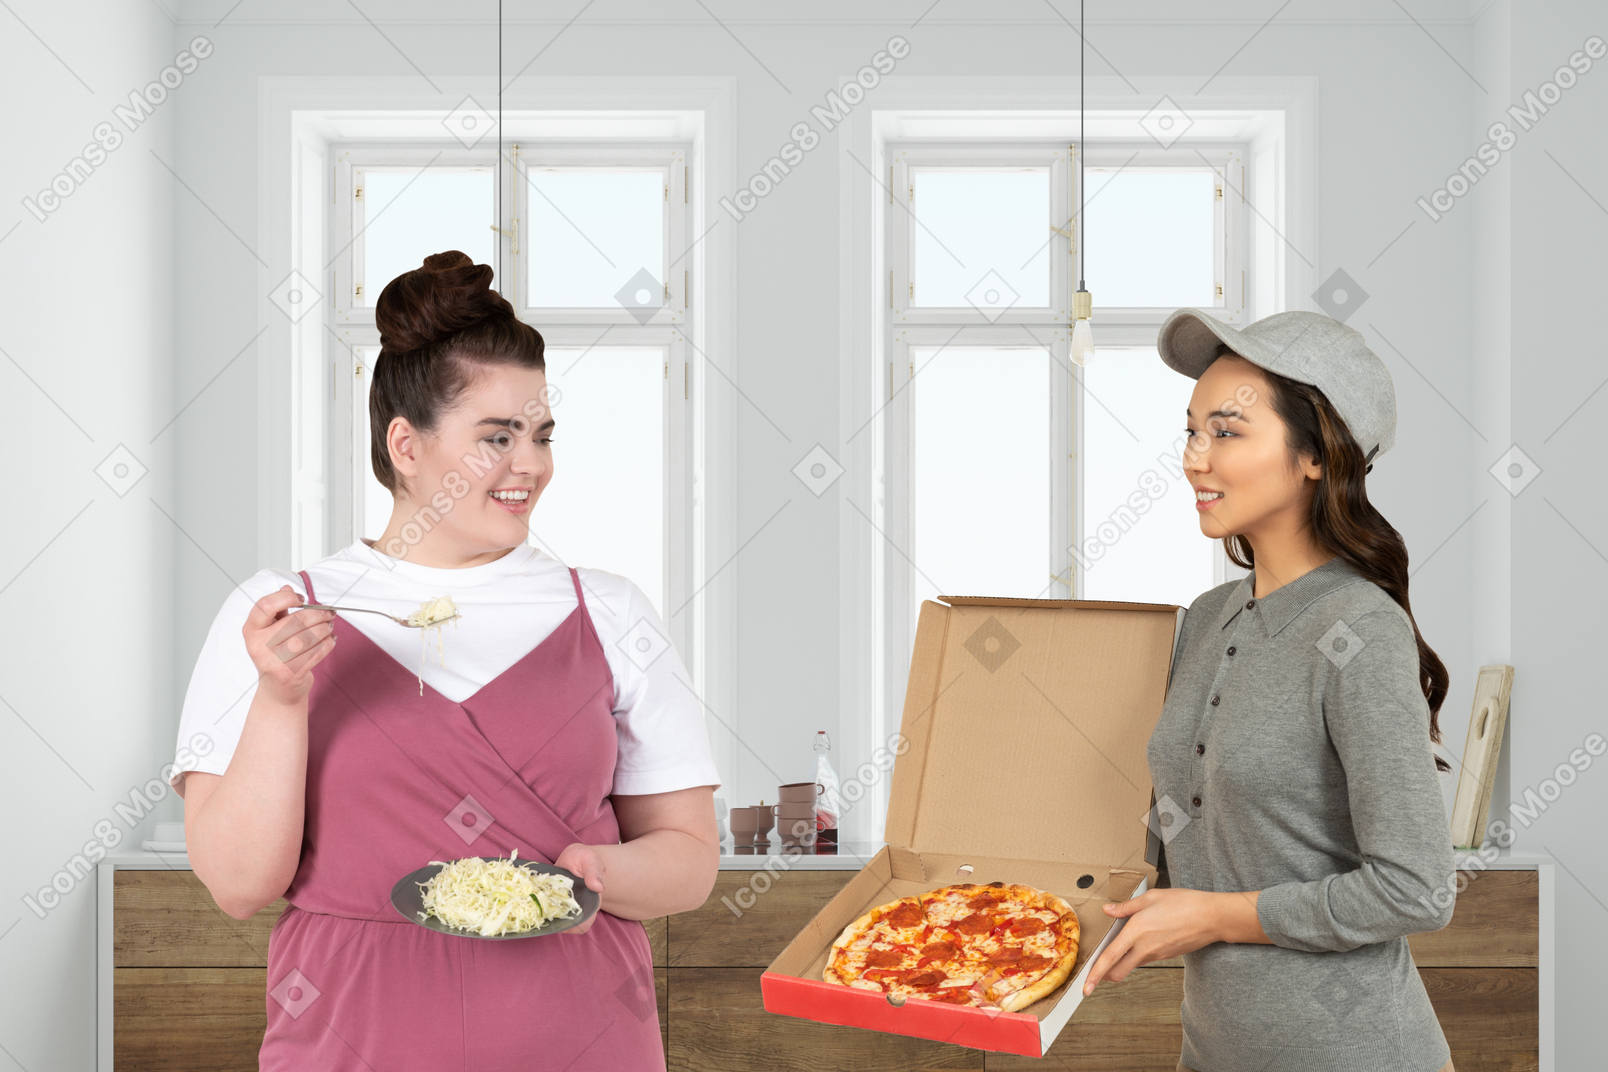 샐러드 한 접시를 들고 피자 한 상자를 가져온 배달 소녀에게 인사하는 더하기 크기의 여성